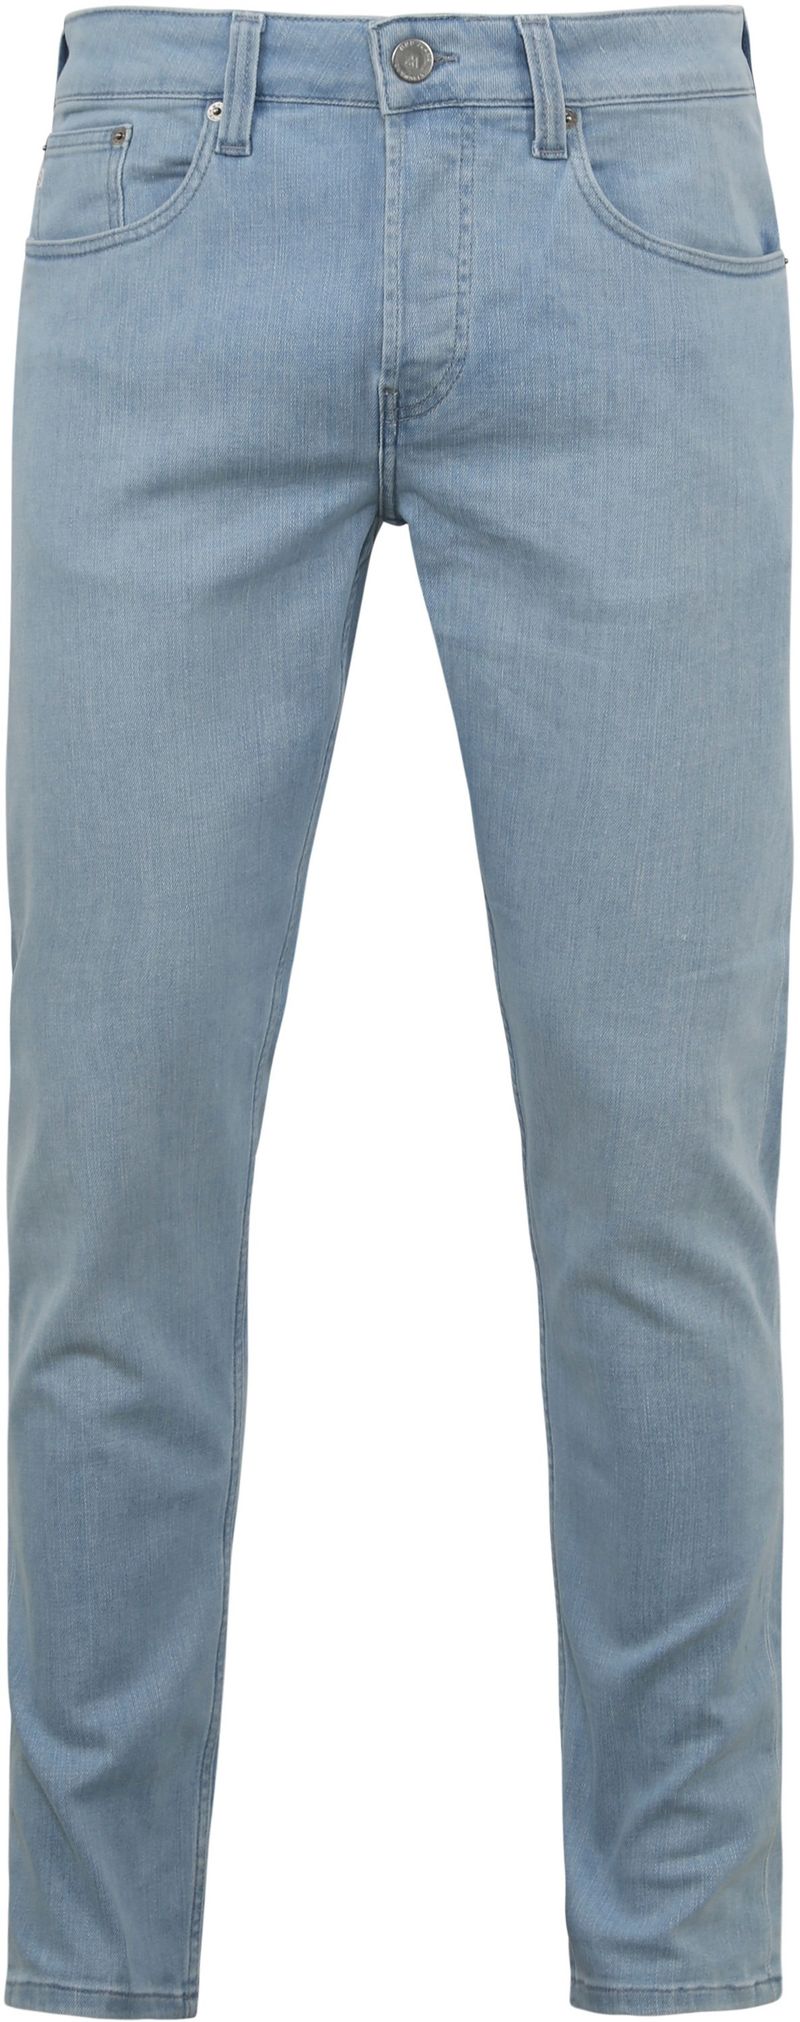 MUD Jeans Denim Slimmer Rick Hellblau - Größe W 30 - L 34 von MUD Jeans